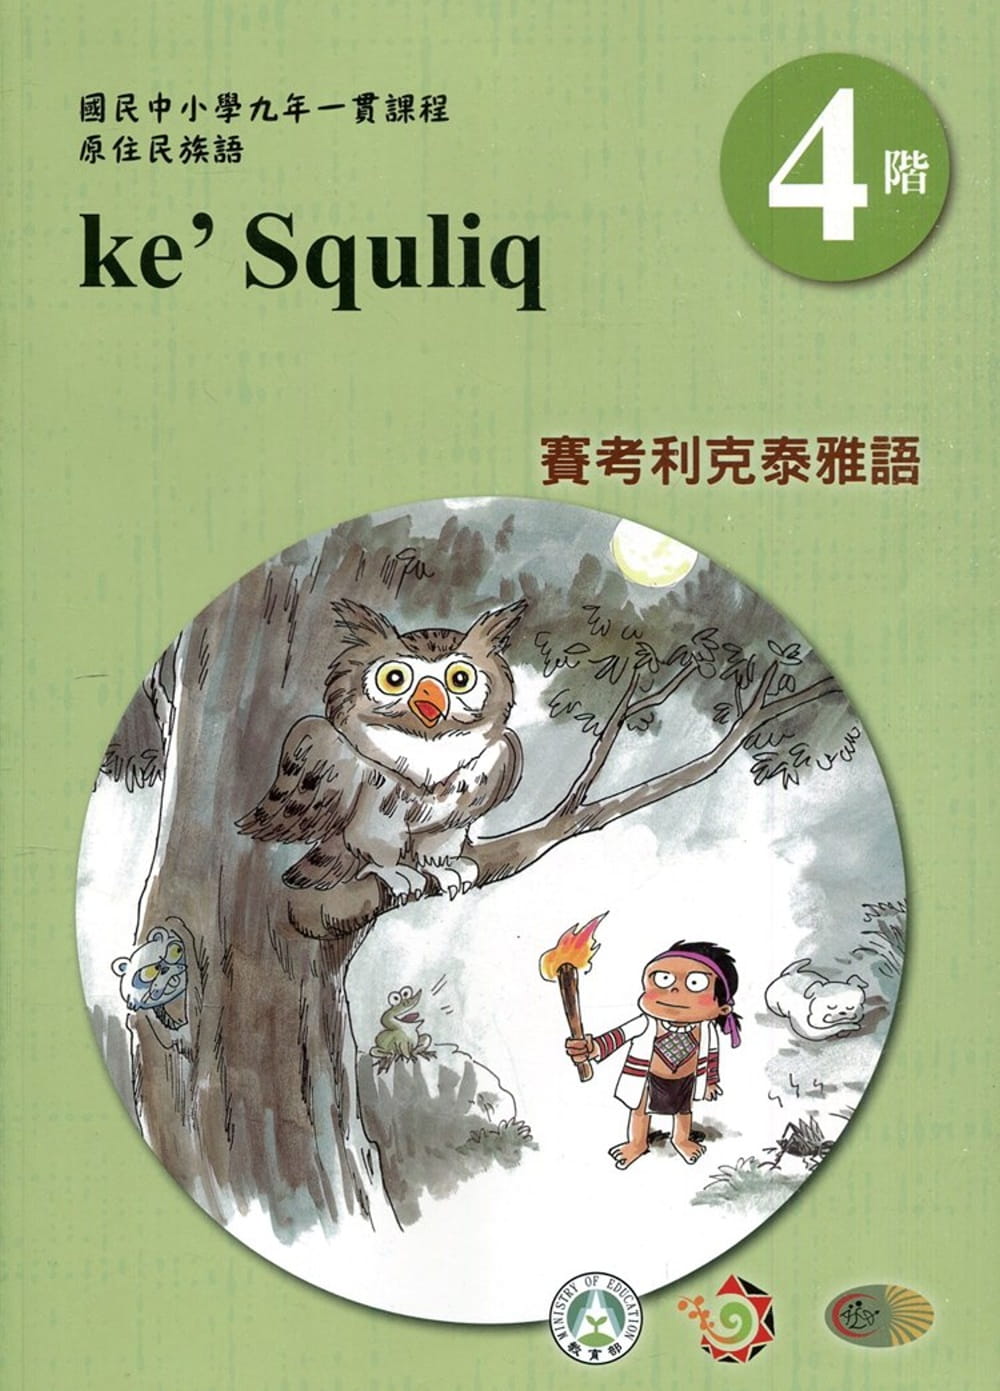 賽考利克泰雅語學習手冊第4階(附光碟)3版2刷